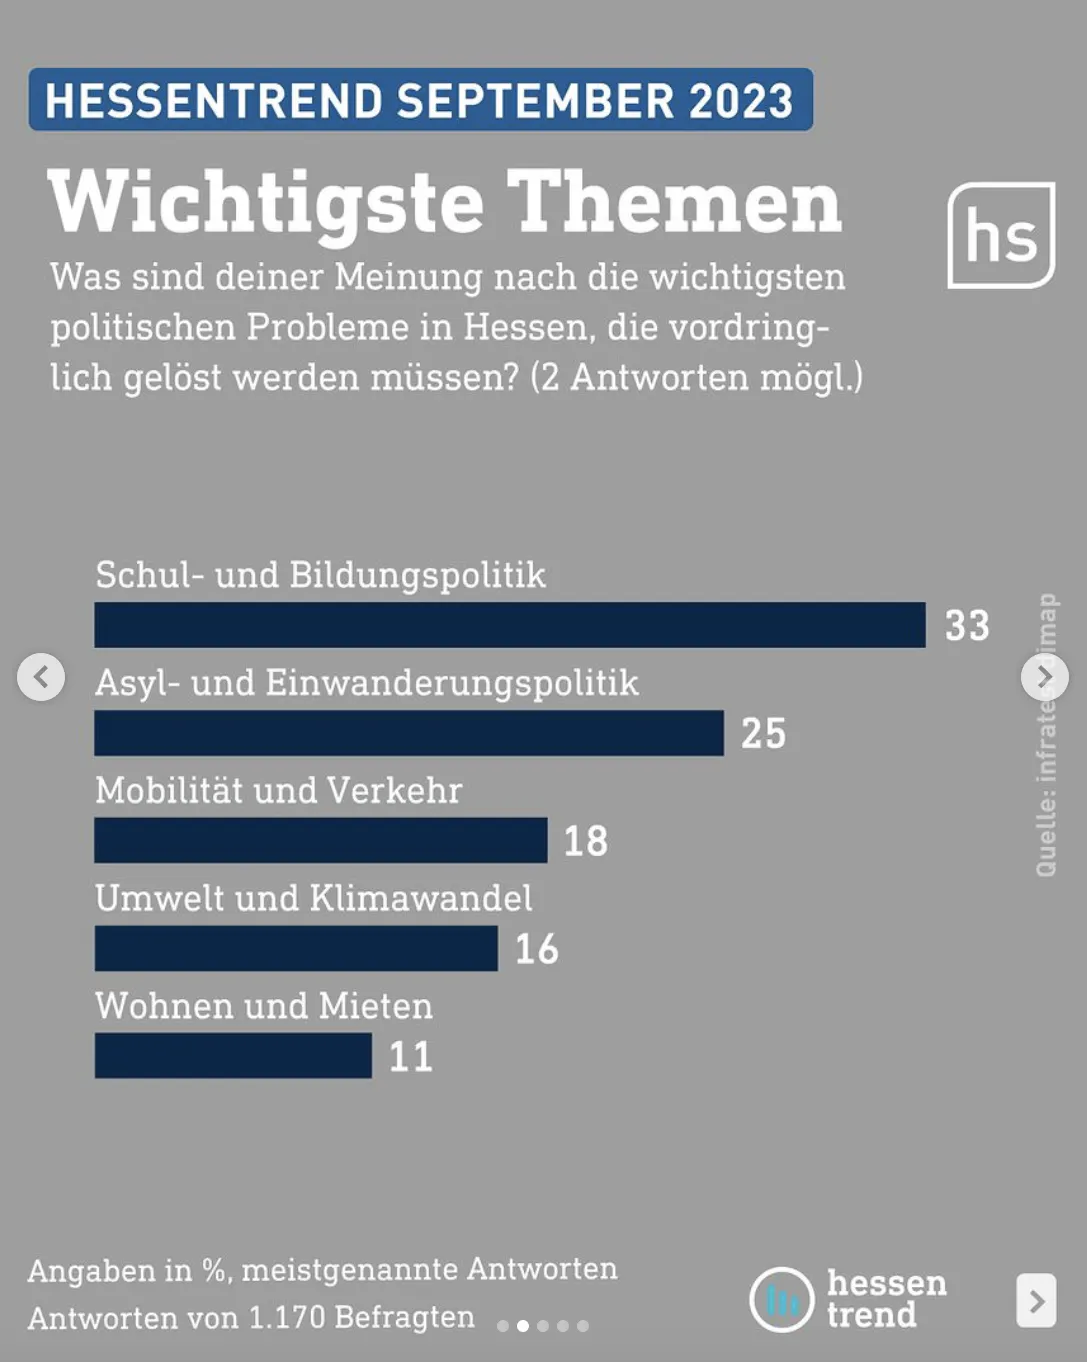 Was sind die wichtigsten politischen Probleme in Hessen, die vordringlich gelöst werden müssen? Bild des hessentrend von hessenschau instagram, auf Platz 1 ist Bildungspolitik, Platz 2 Einwanderungspolitik